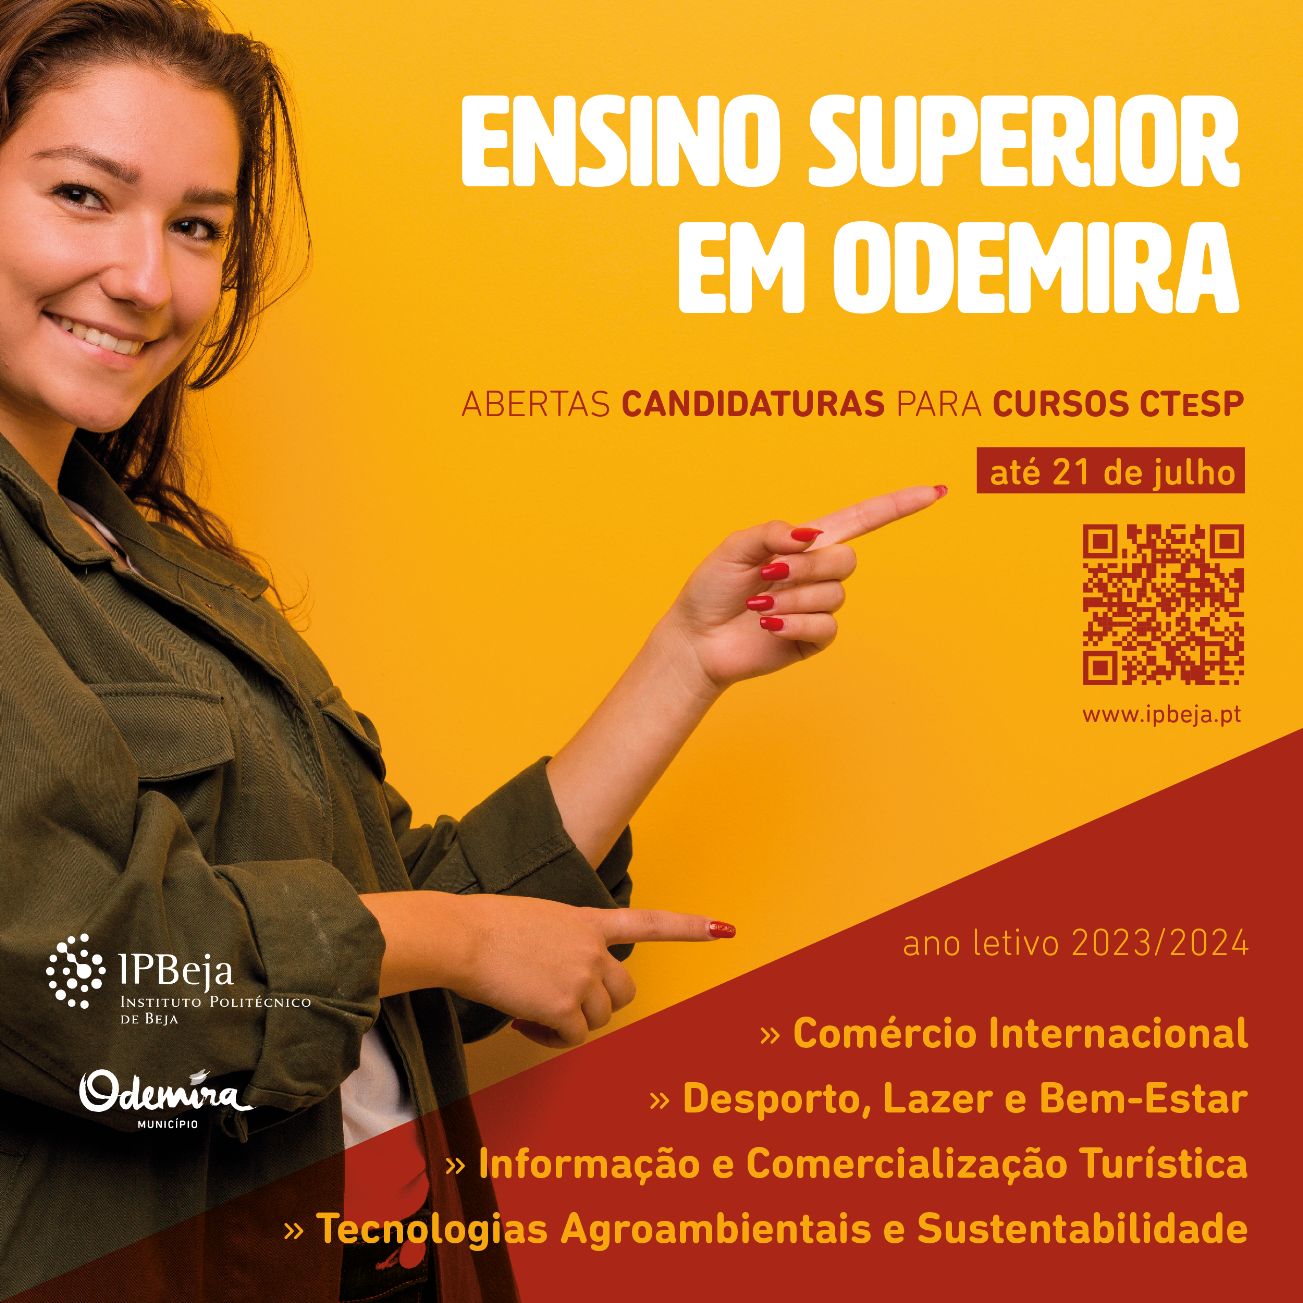 Candidaturas ao Ensino Superior em Odemira 2023/2024